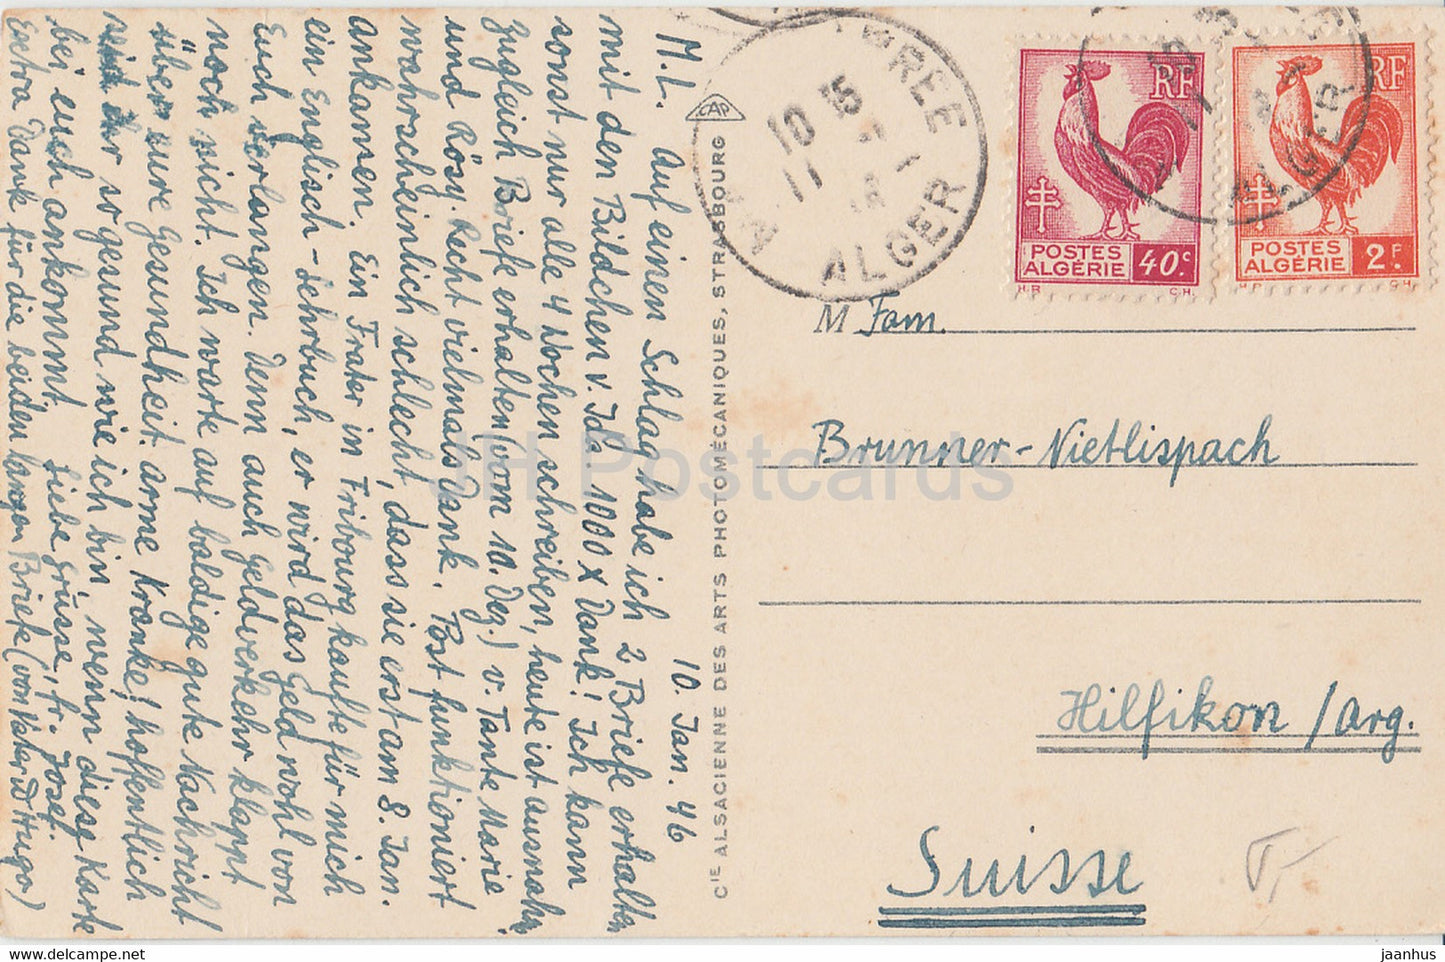 La Priere du Soir - 1262 - carte postale ancienne - 1946 - Algérie - occasion